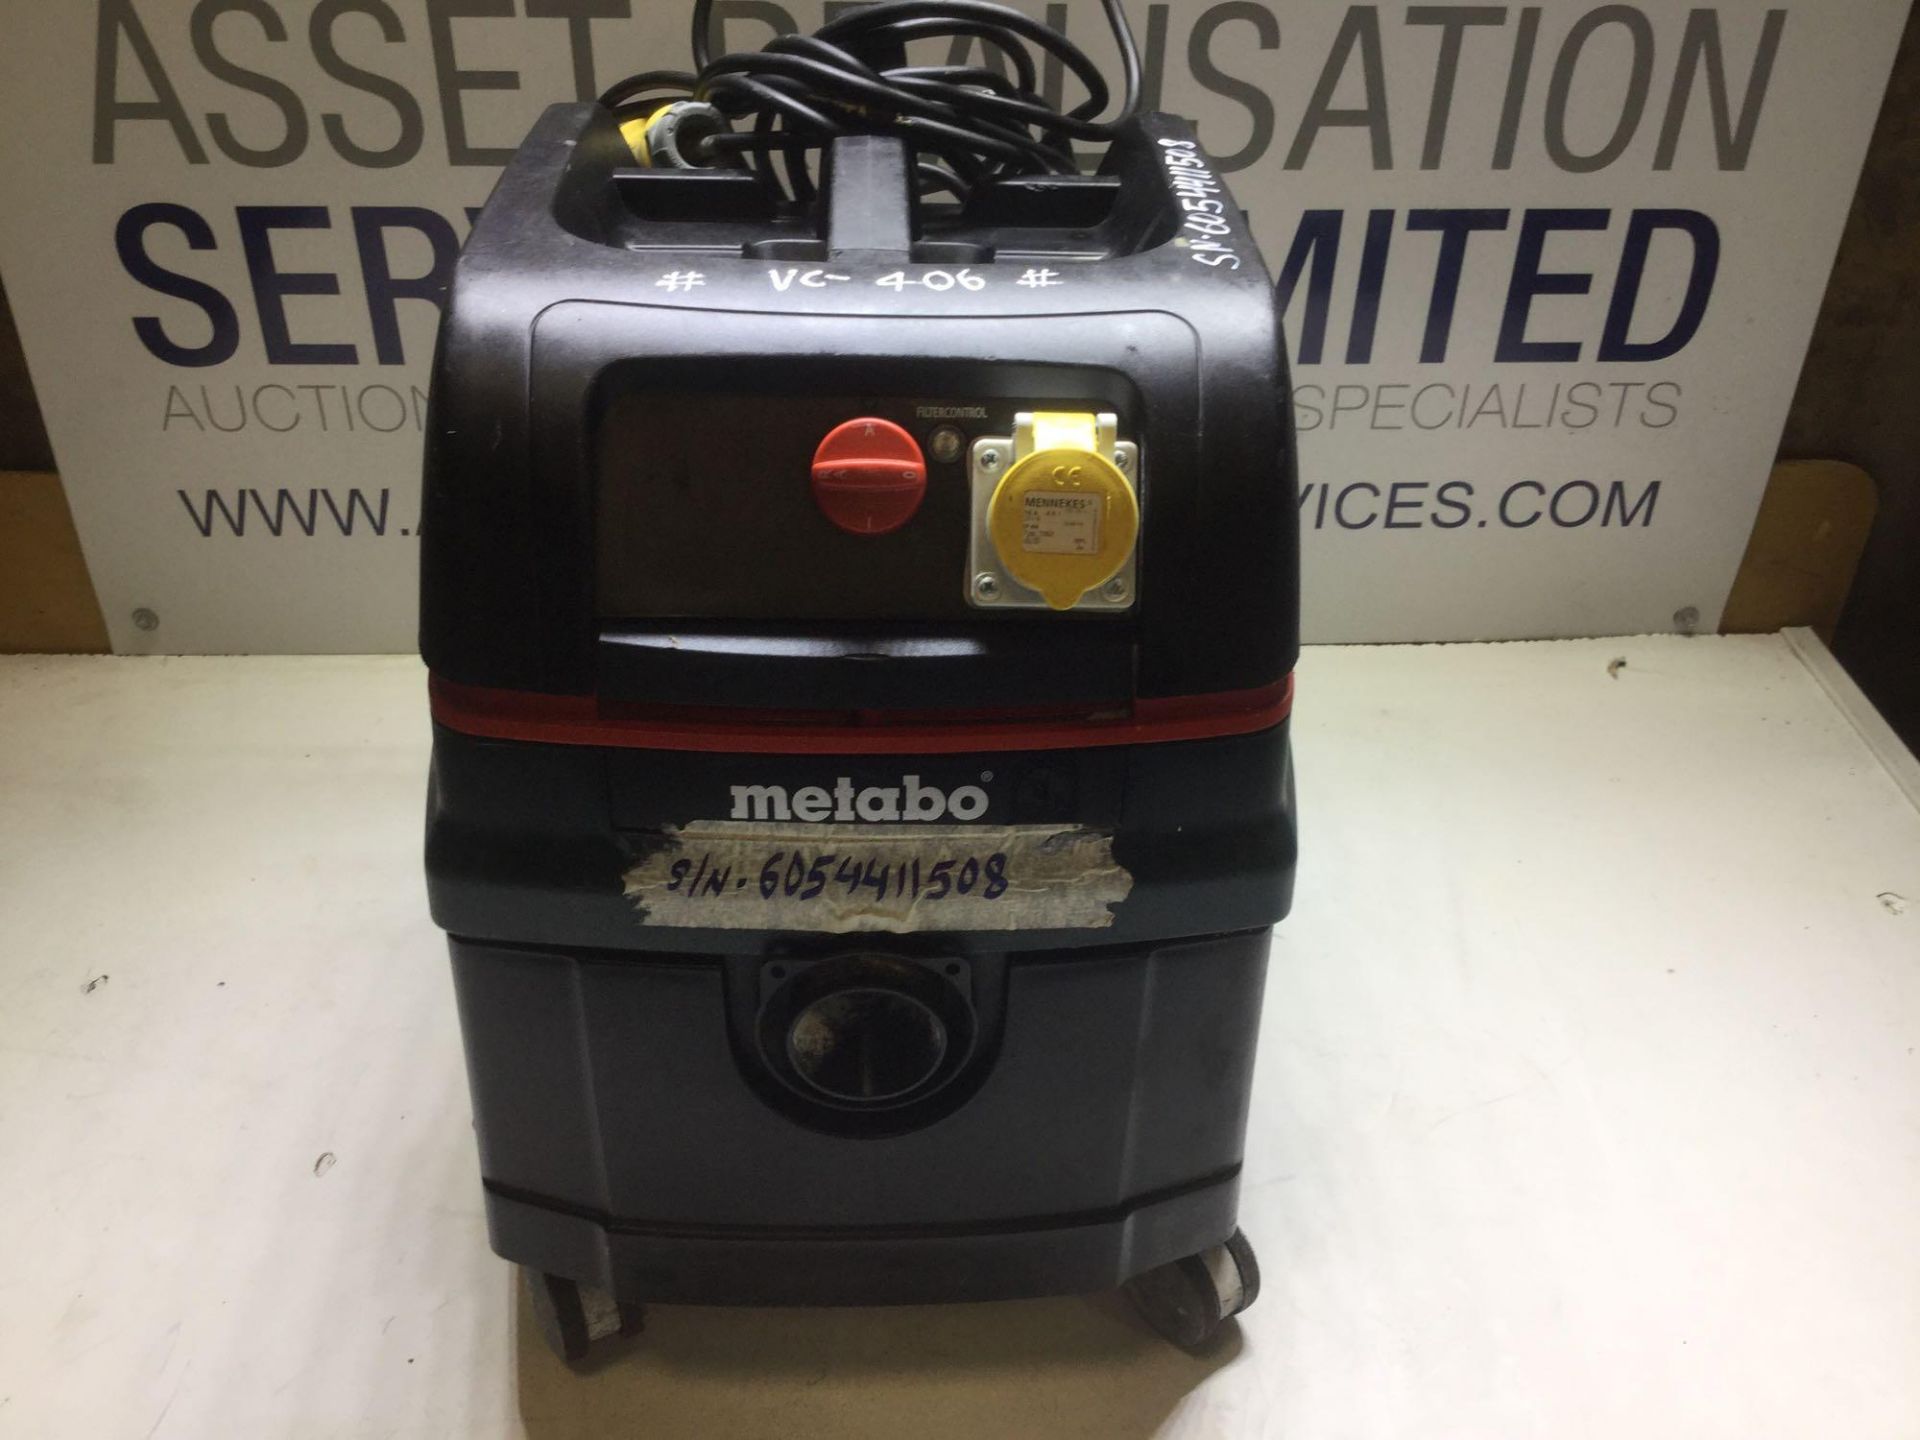 Metabo ASR 25 L SC Vacuum Cleaner With 110v Socket - Bild 2 aus 4